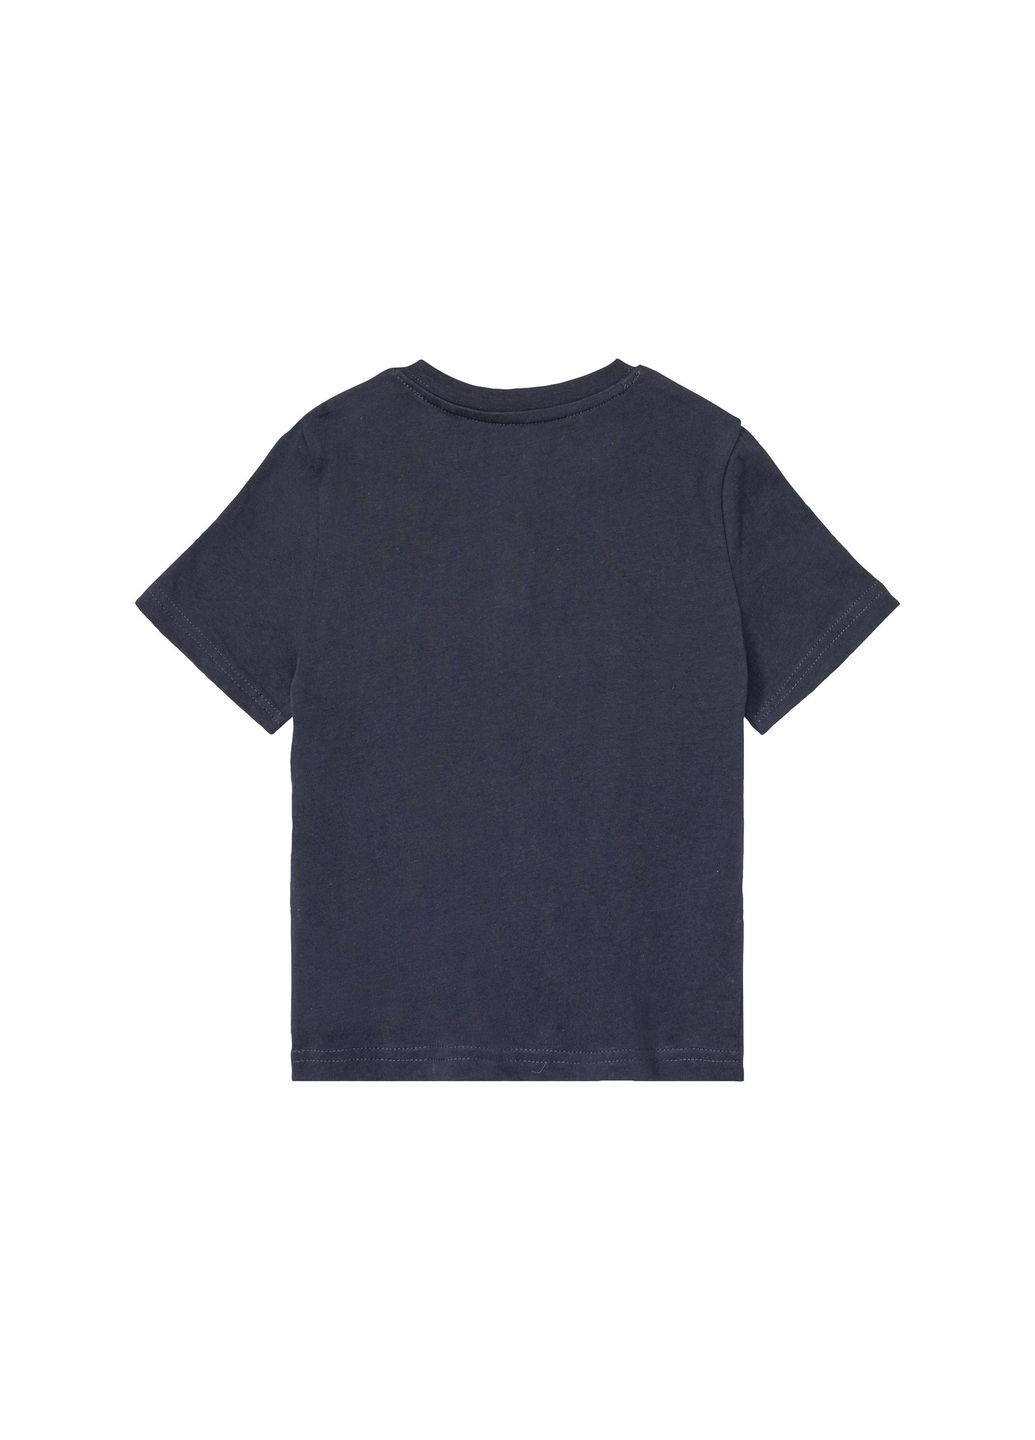 Темно-синя демісезонна футболка з планкою на гудзиках для хлопчика 403695 темно-синій Lupilu